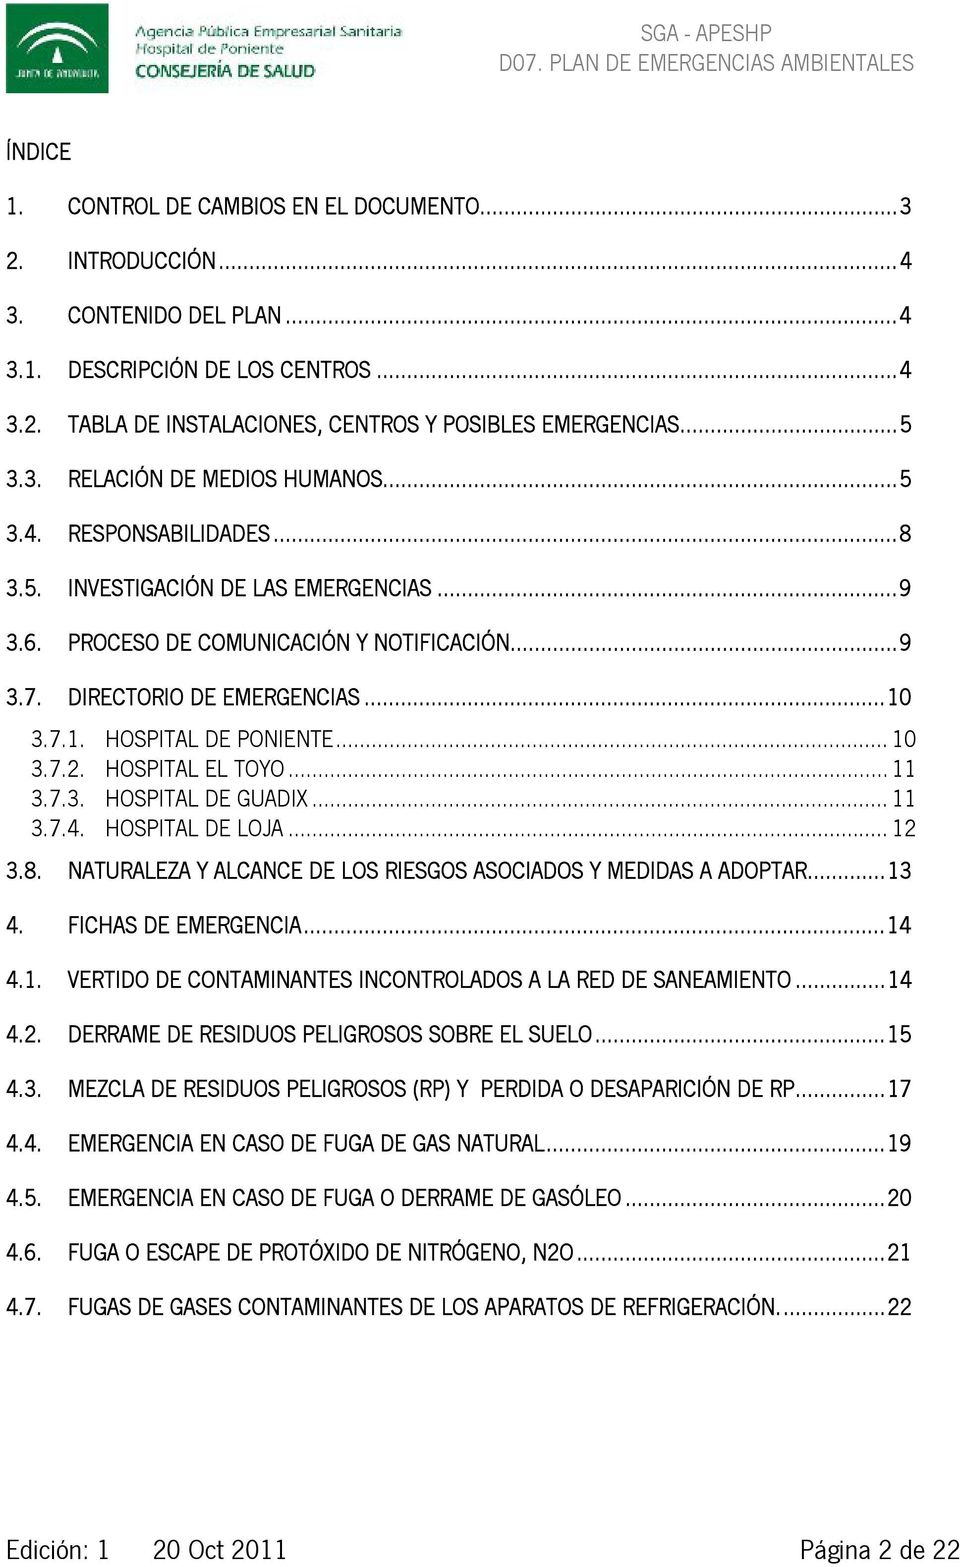 HOSPITAL EL TOYO... 11 3.7.3. HOSPITAL DE GUADIX... 11 3.7.4. HOSPITAL DE LOJA... 12 3.8. NATURALEZA Y ALCANCE DE LOS RIESGOS ASOCIADOS Y MEDIDAS A ADOPTAR...13 4. FICHAS DE EMERGENCIA...14 4.1. VERTIDO DE CONTAMINANTES INCONTROLADOS A LA RED DE SANEAMIENTO.